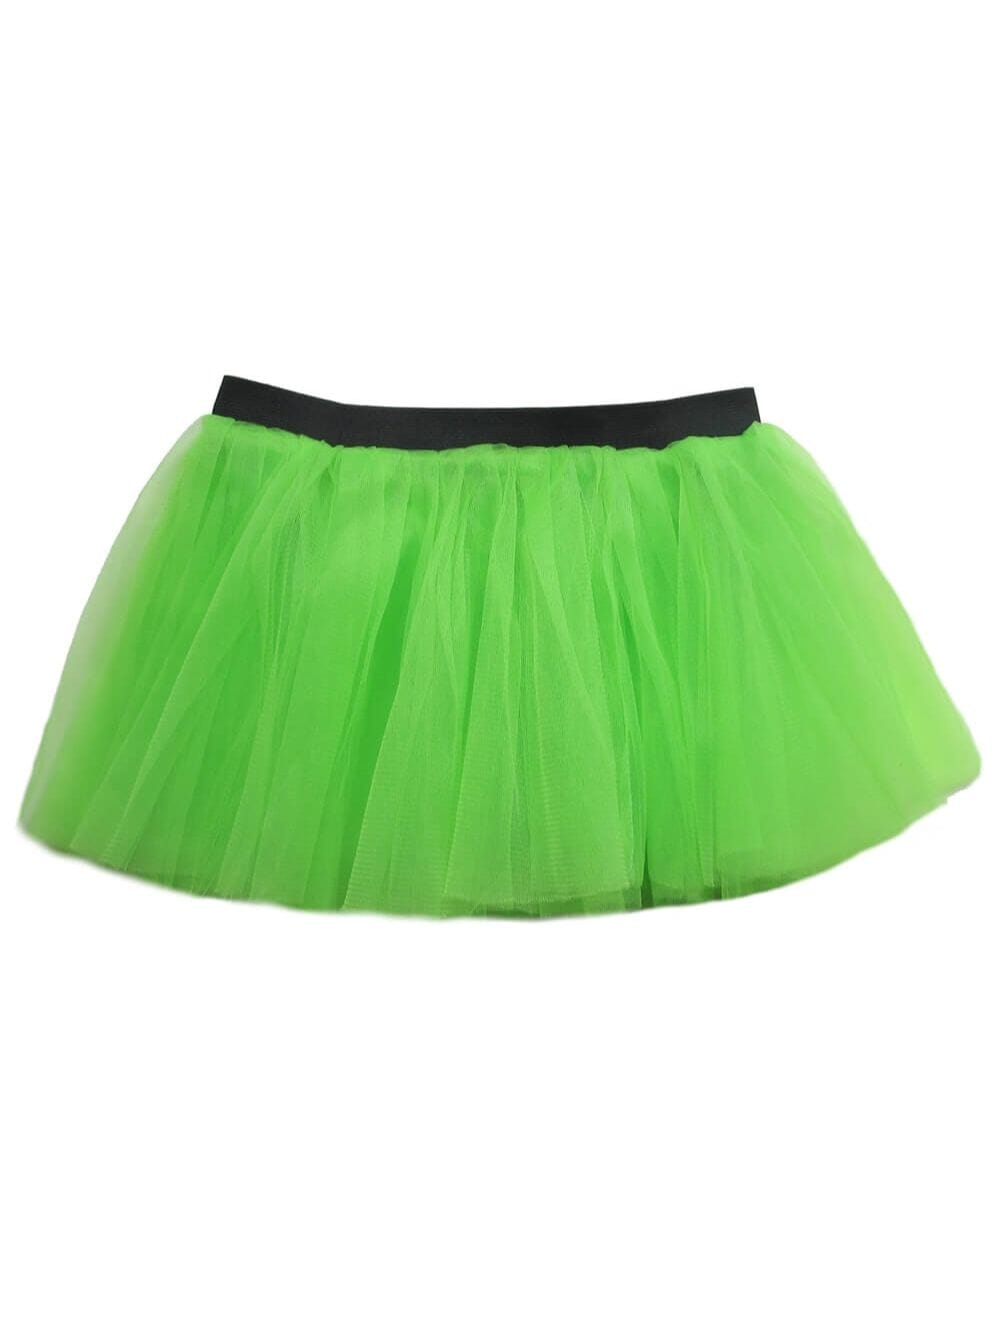 Lime Adult Size Women's 5K Running Tutu Skirt Costume - Sydney So Sweet